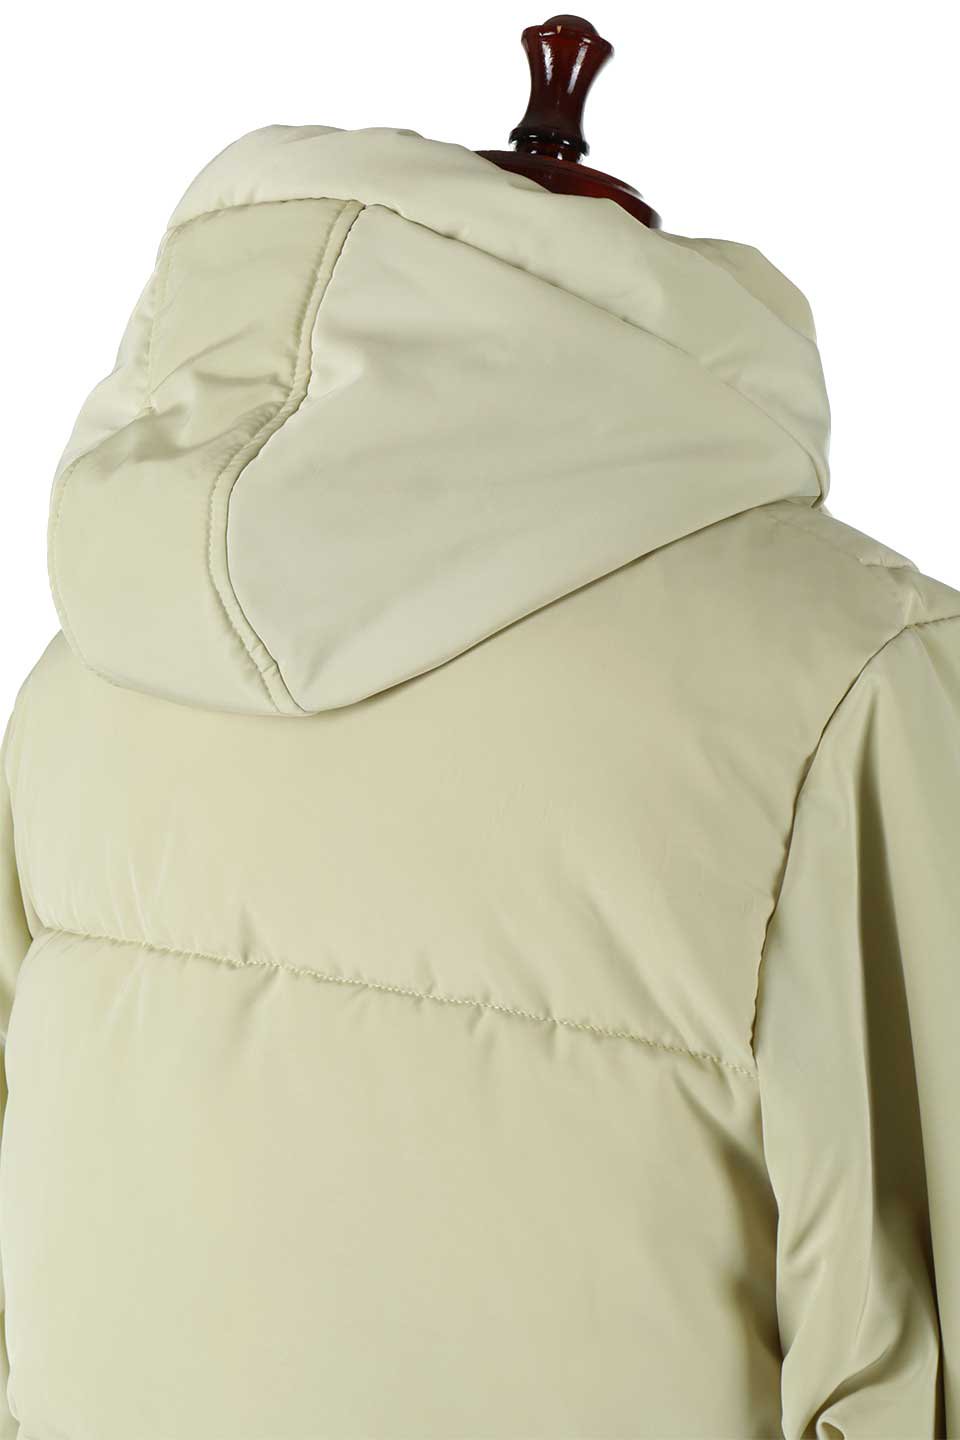 SORONAShortPufferJacketソロナ中綿・ショートジャケット大人カジュアルに最適な海外ファッションのothers（その他インポートアイテム）のアウターやジャケット。ボリューミーだけど着ぶくれしない。デュポン社の新素材を使用した中綿ジャケット。/main-16